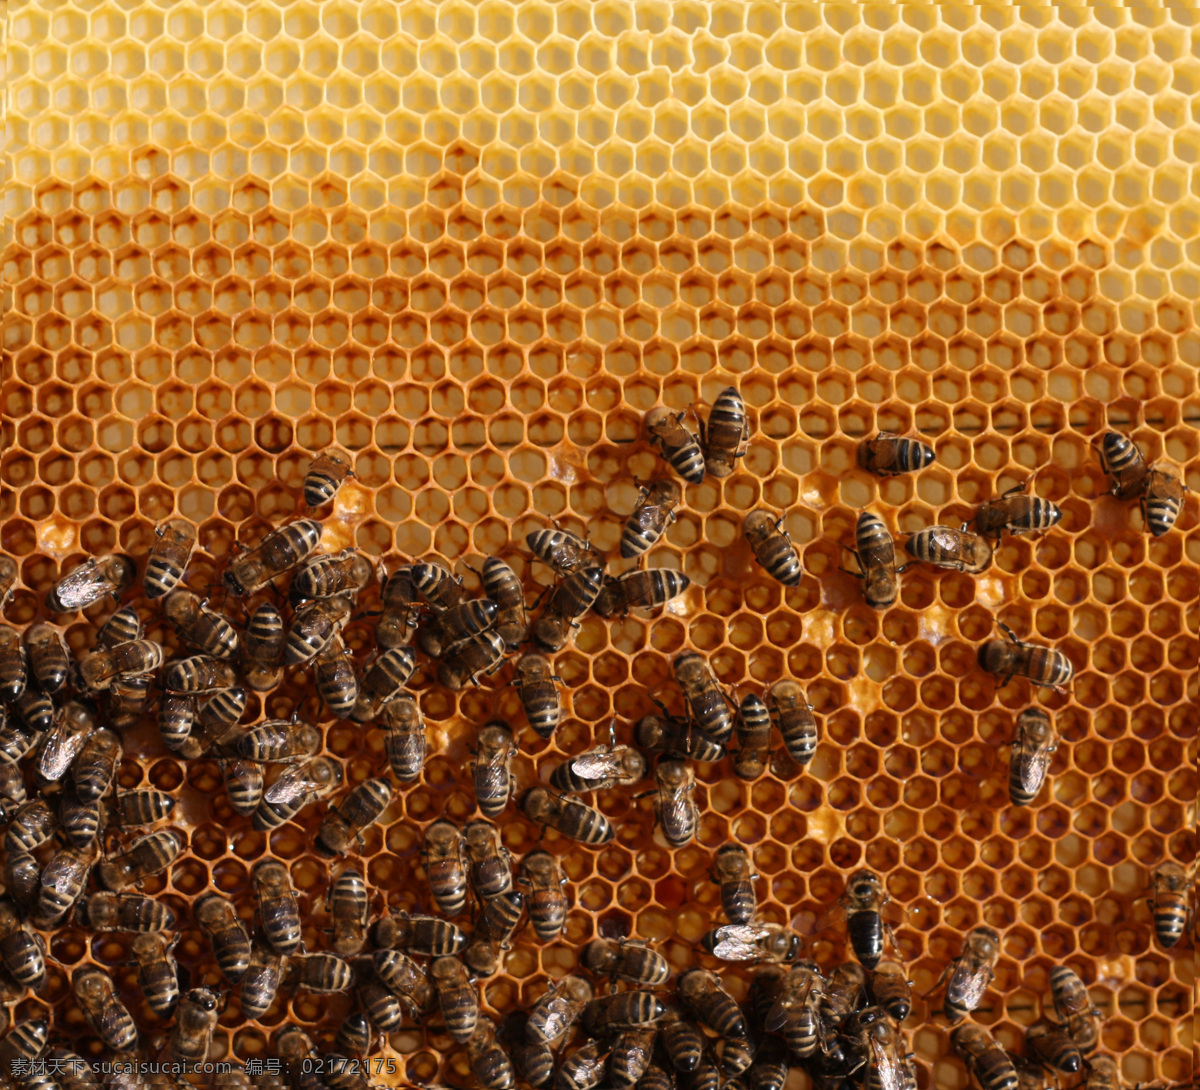 蜂窝 里 蜂蜜 蜜蜂 昆虫 蜂巢 蜜蜂摄影 昆虫世界 生物世界